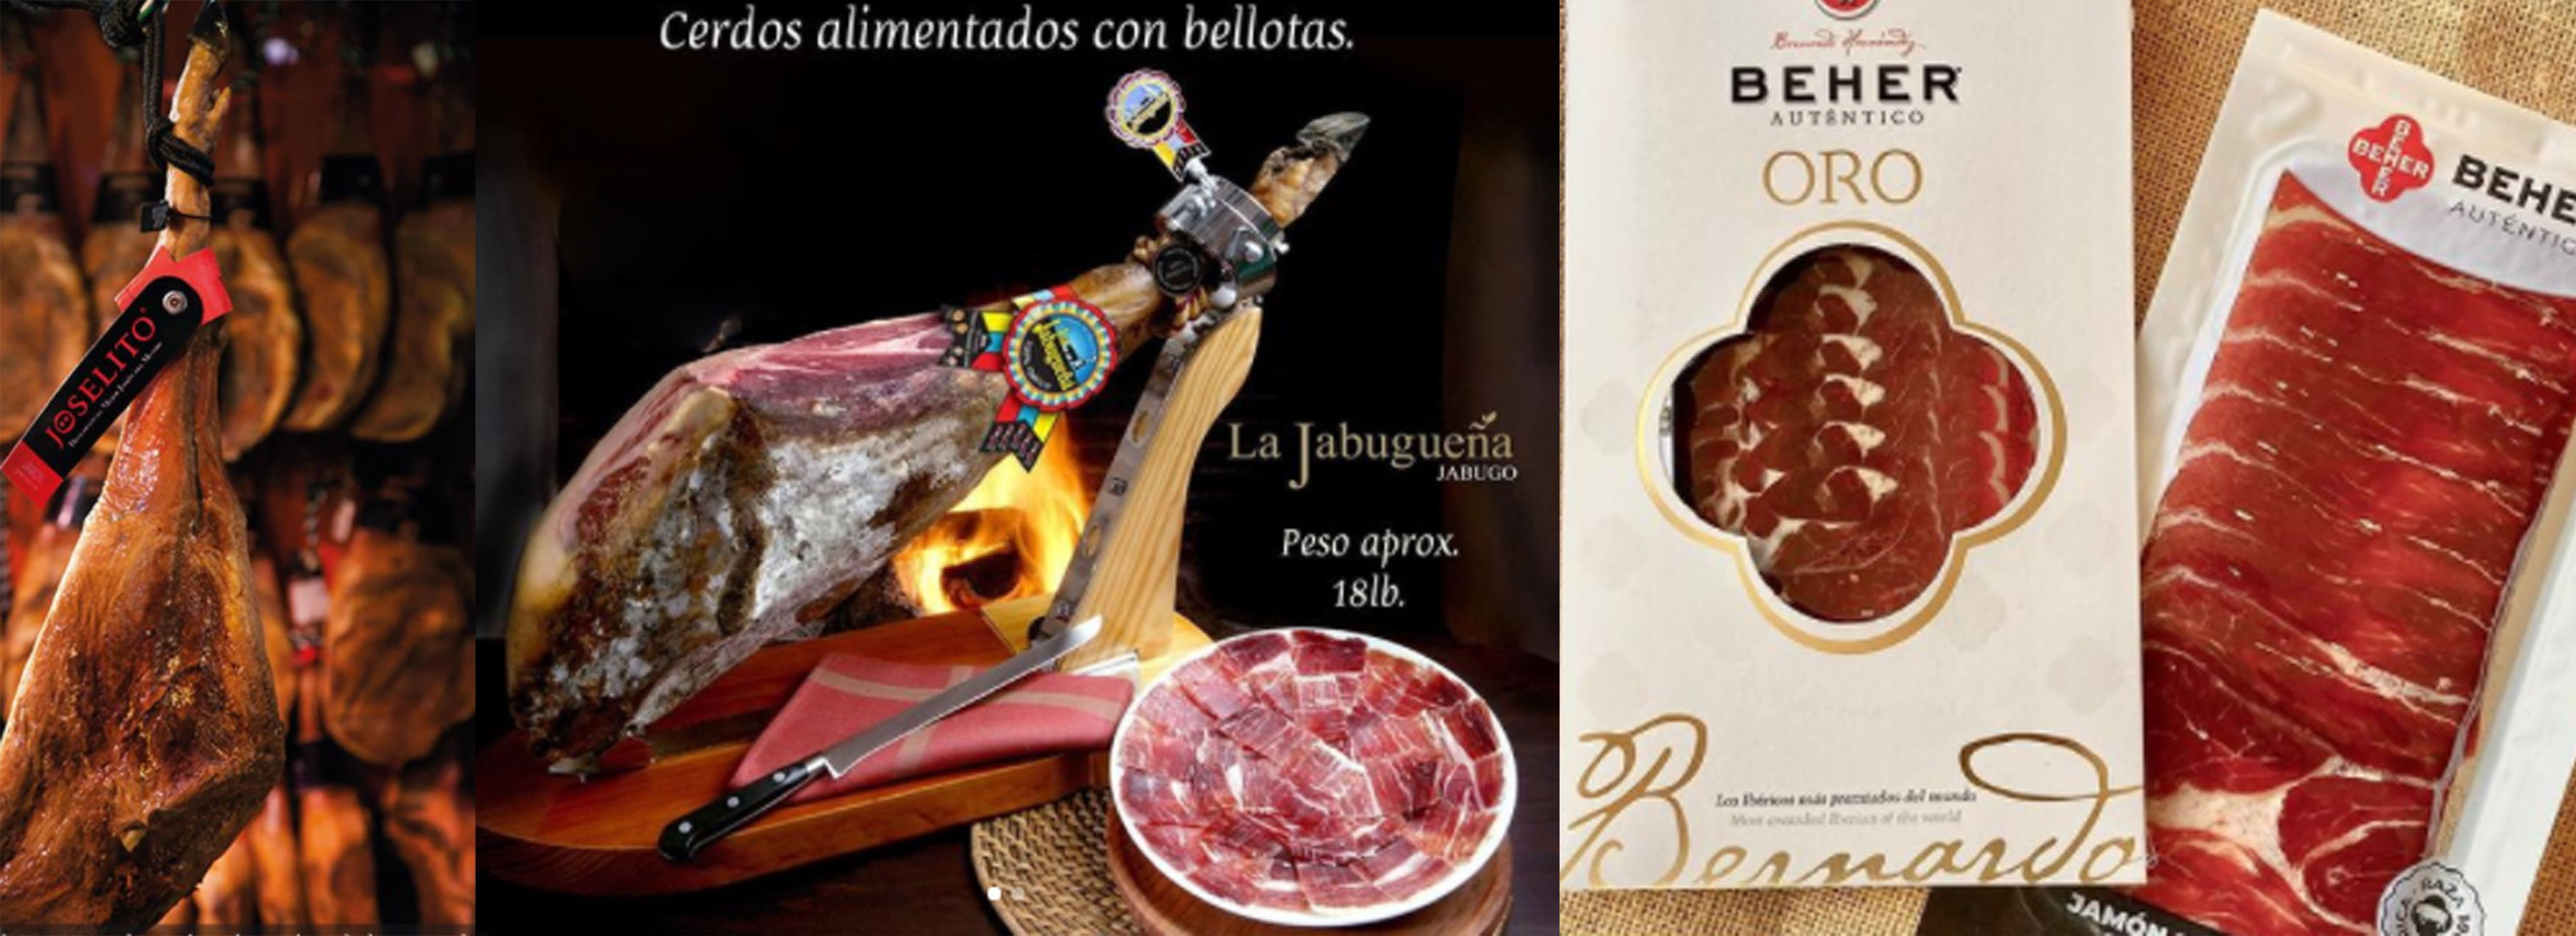 Pata Negra distribuye los jamones ibéricos de las marcas Joselito, Beher y Jabugueña. Foto Prensa Libre: Cortesía.